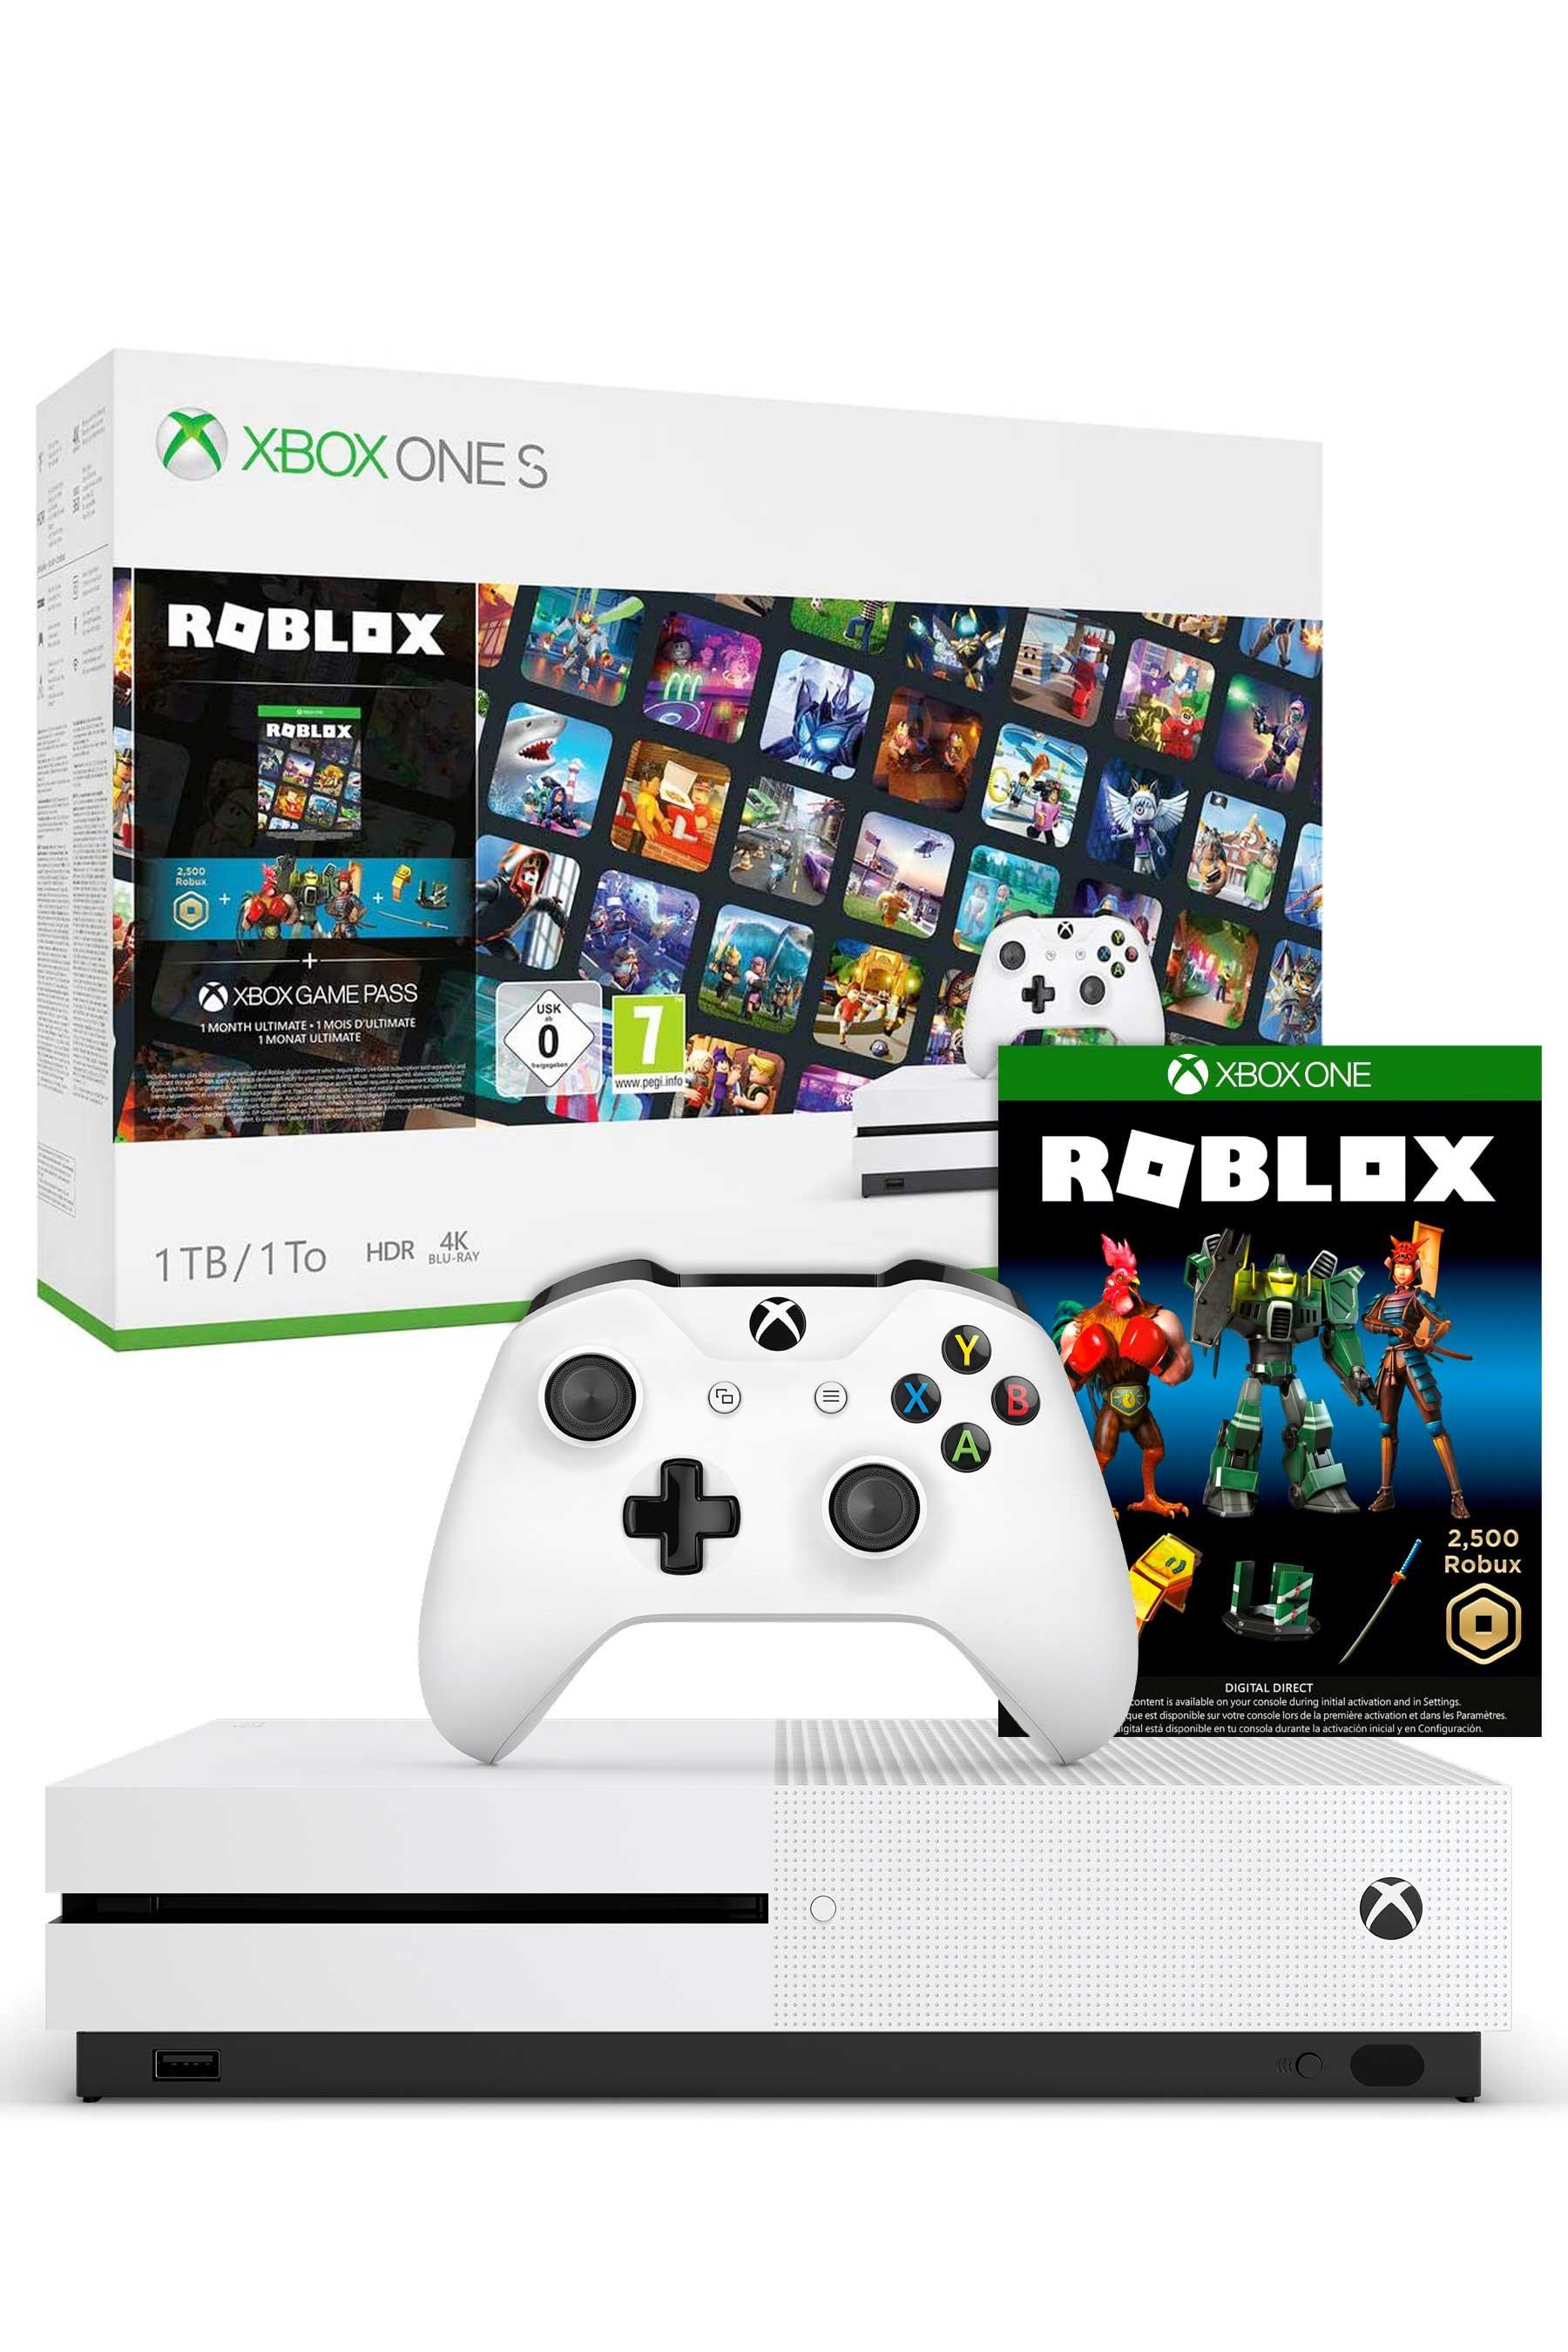 Xbox One S 1tb Console With Roblox Studio - roblox studio download free xbox 1